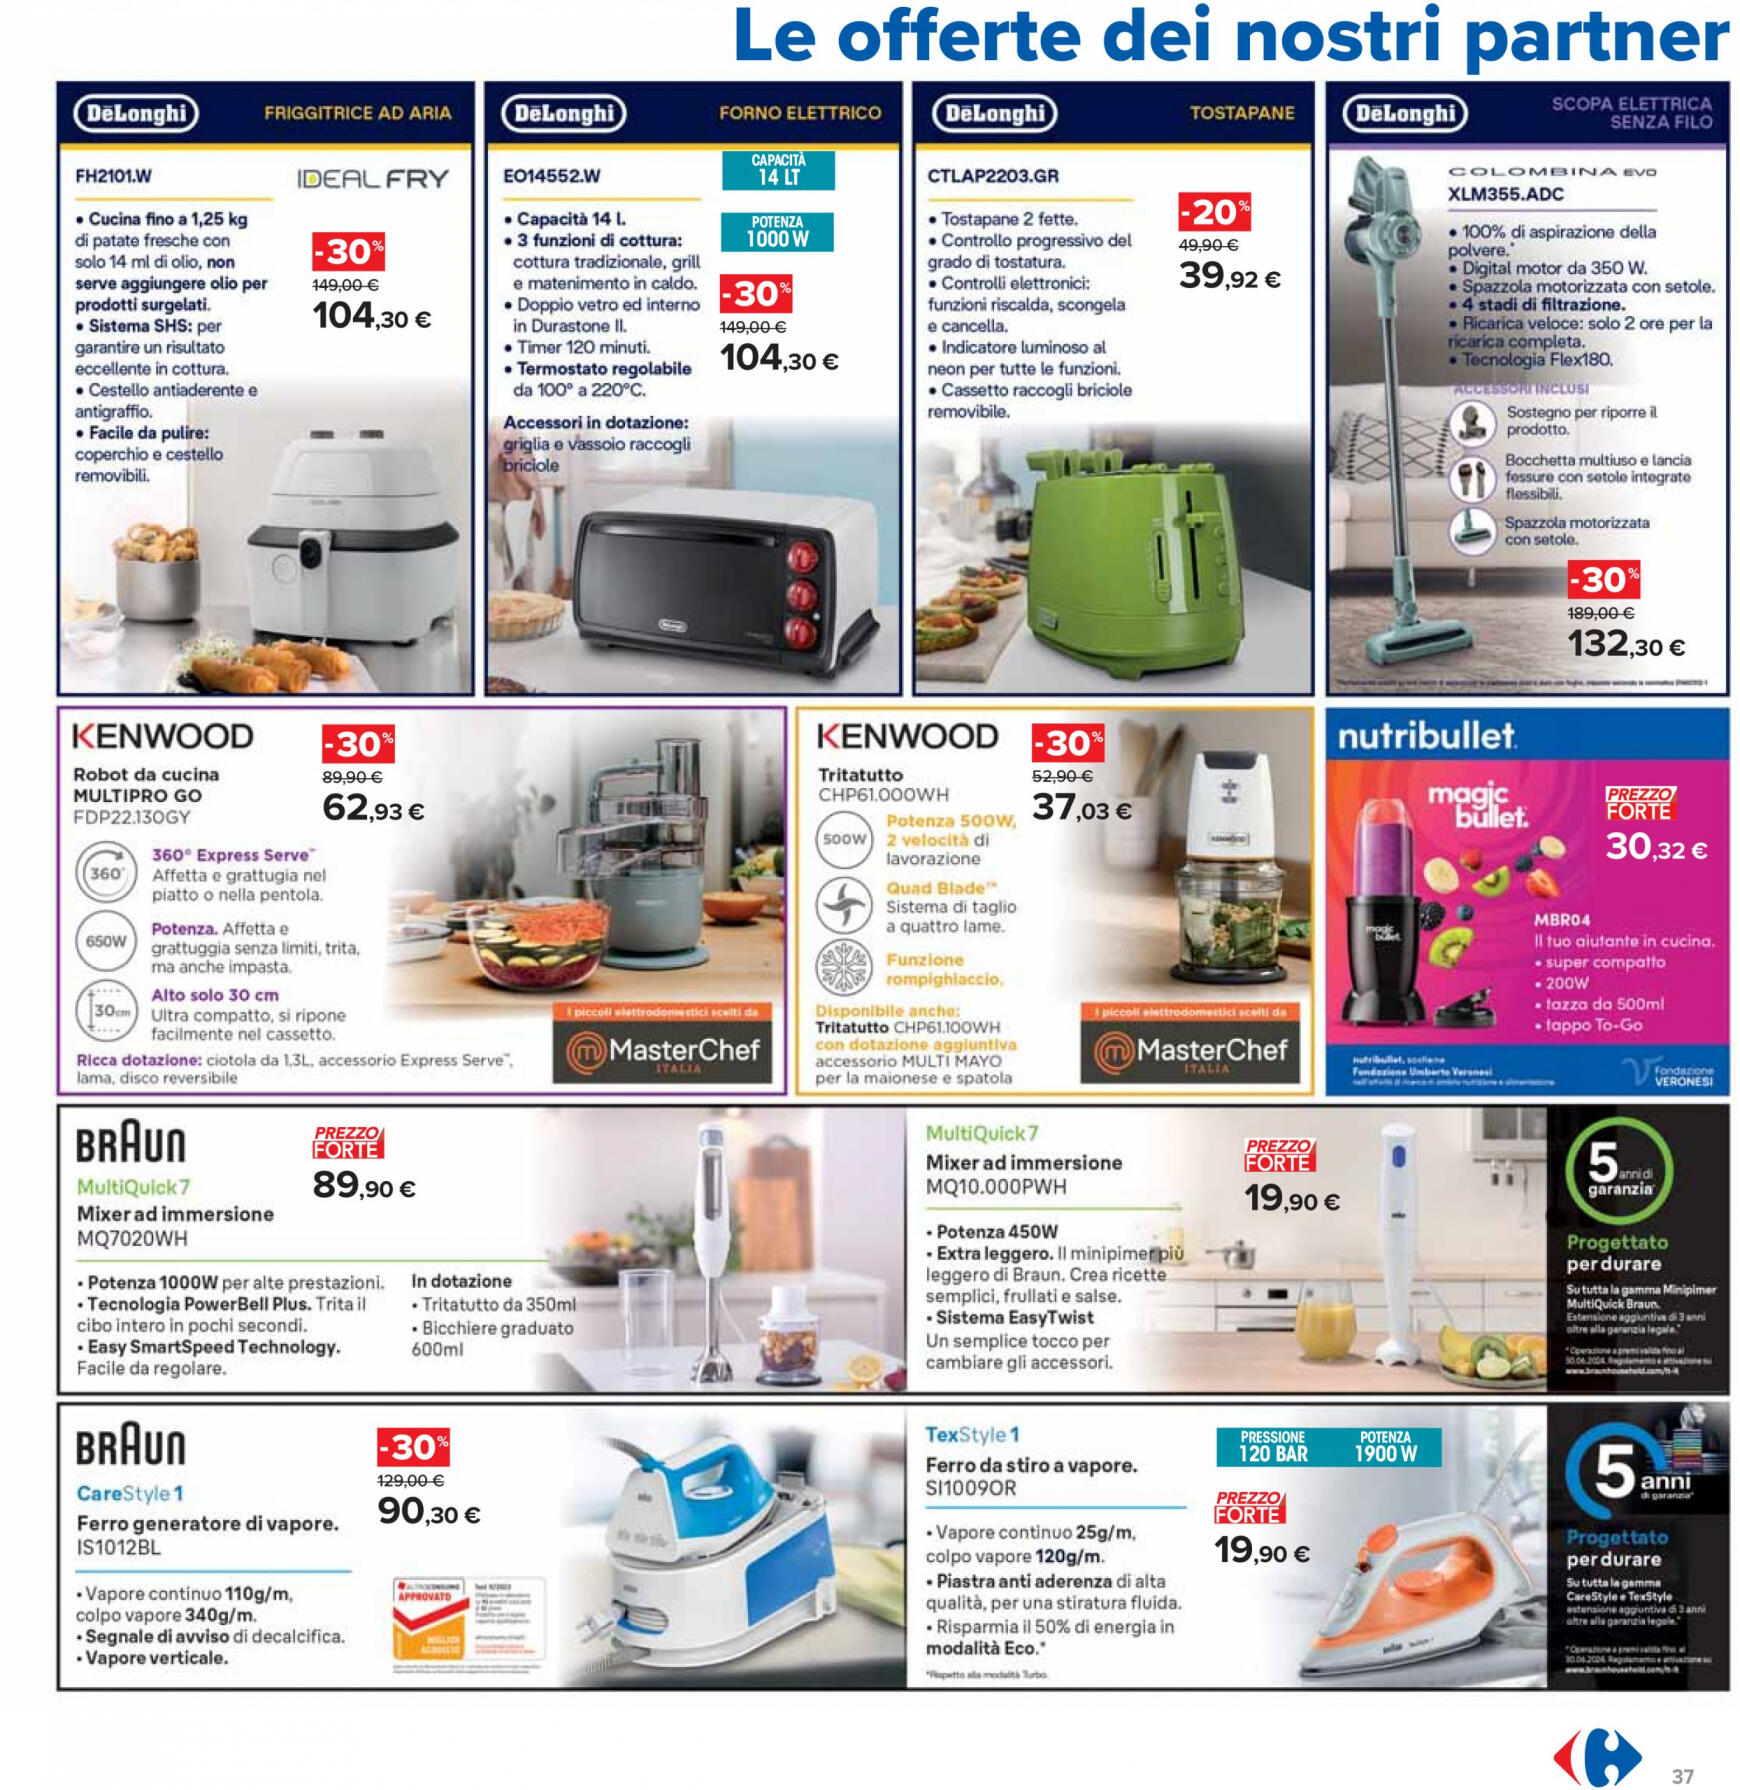 carrefour - Nuovo volantino Carrefour - Sottocosto Freschi 16.05. - 29.05. - page: 37